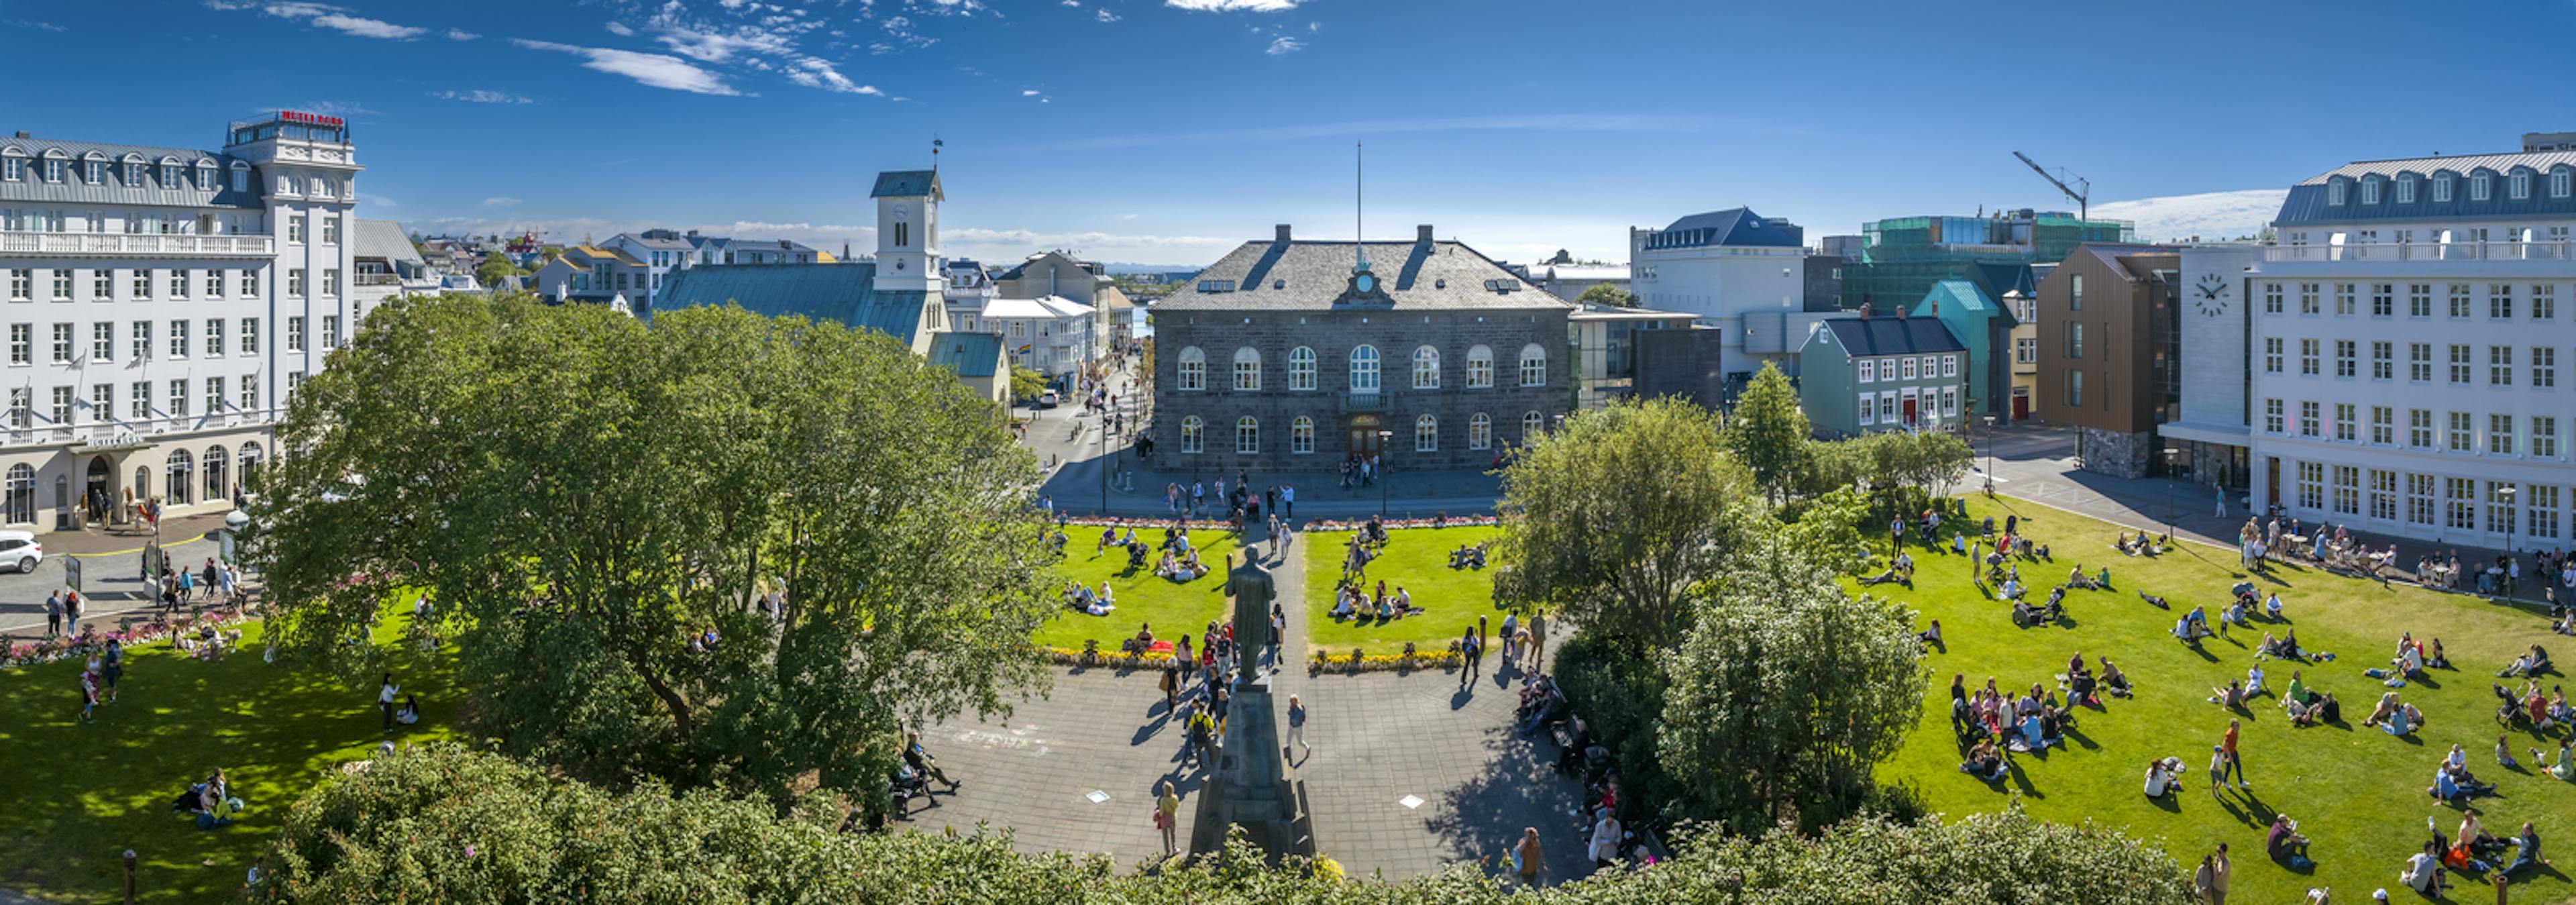 Reykjavík downtown